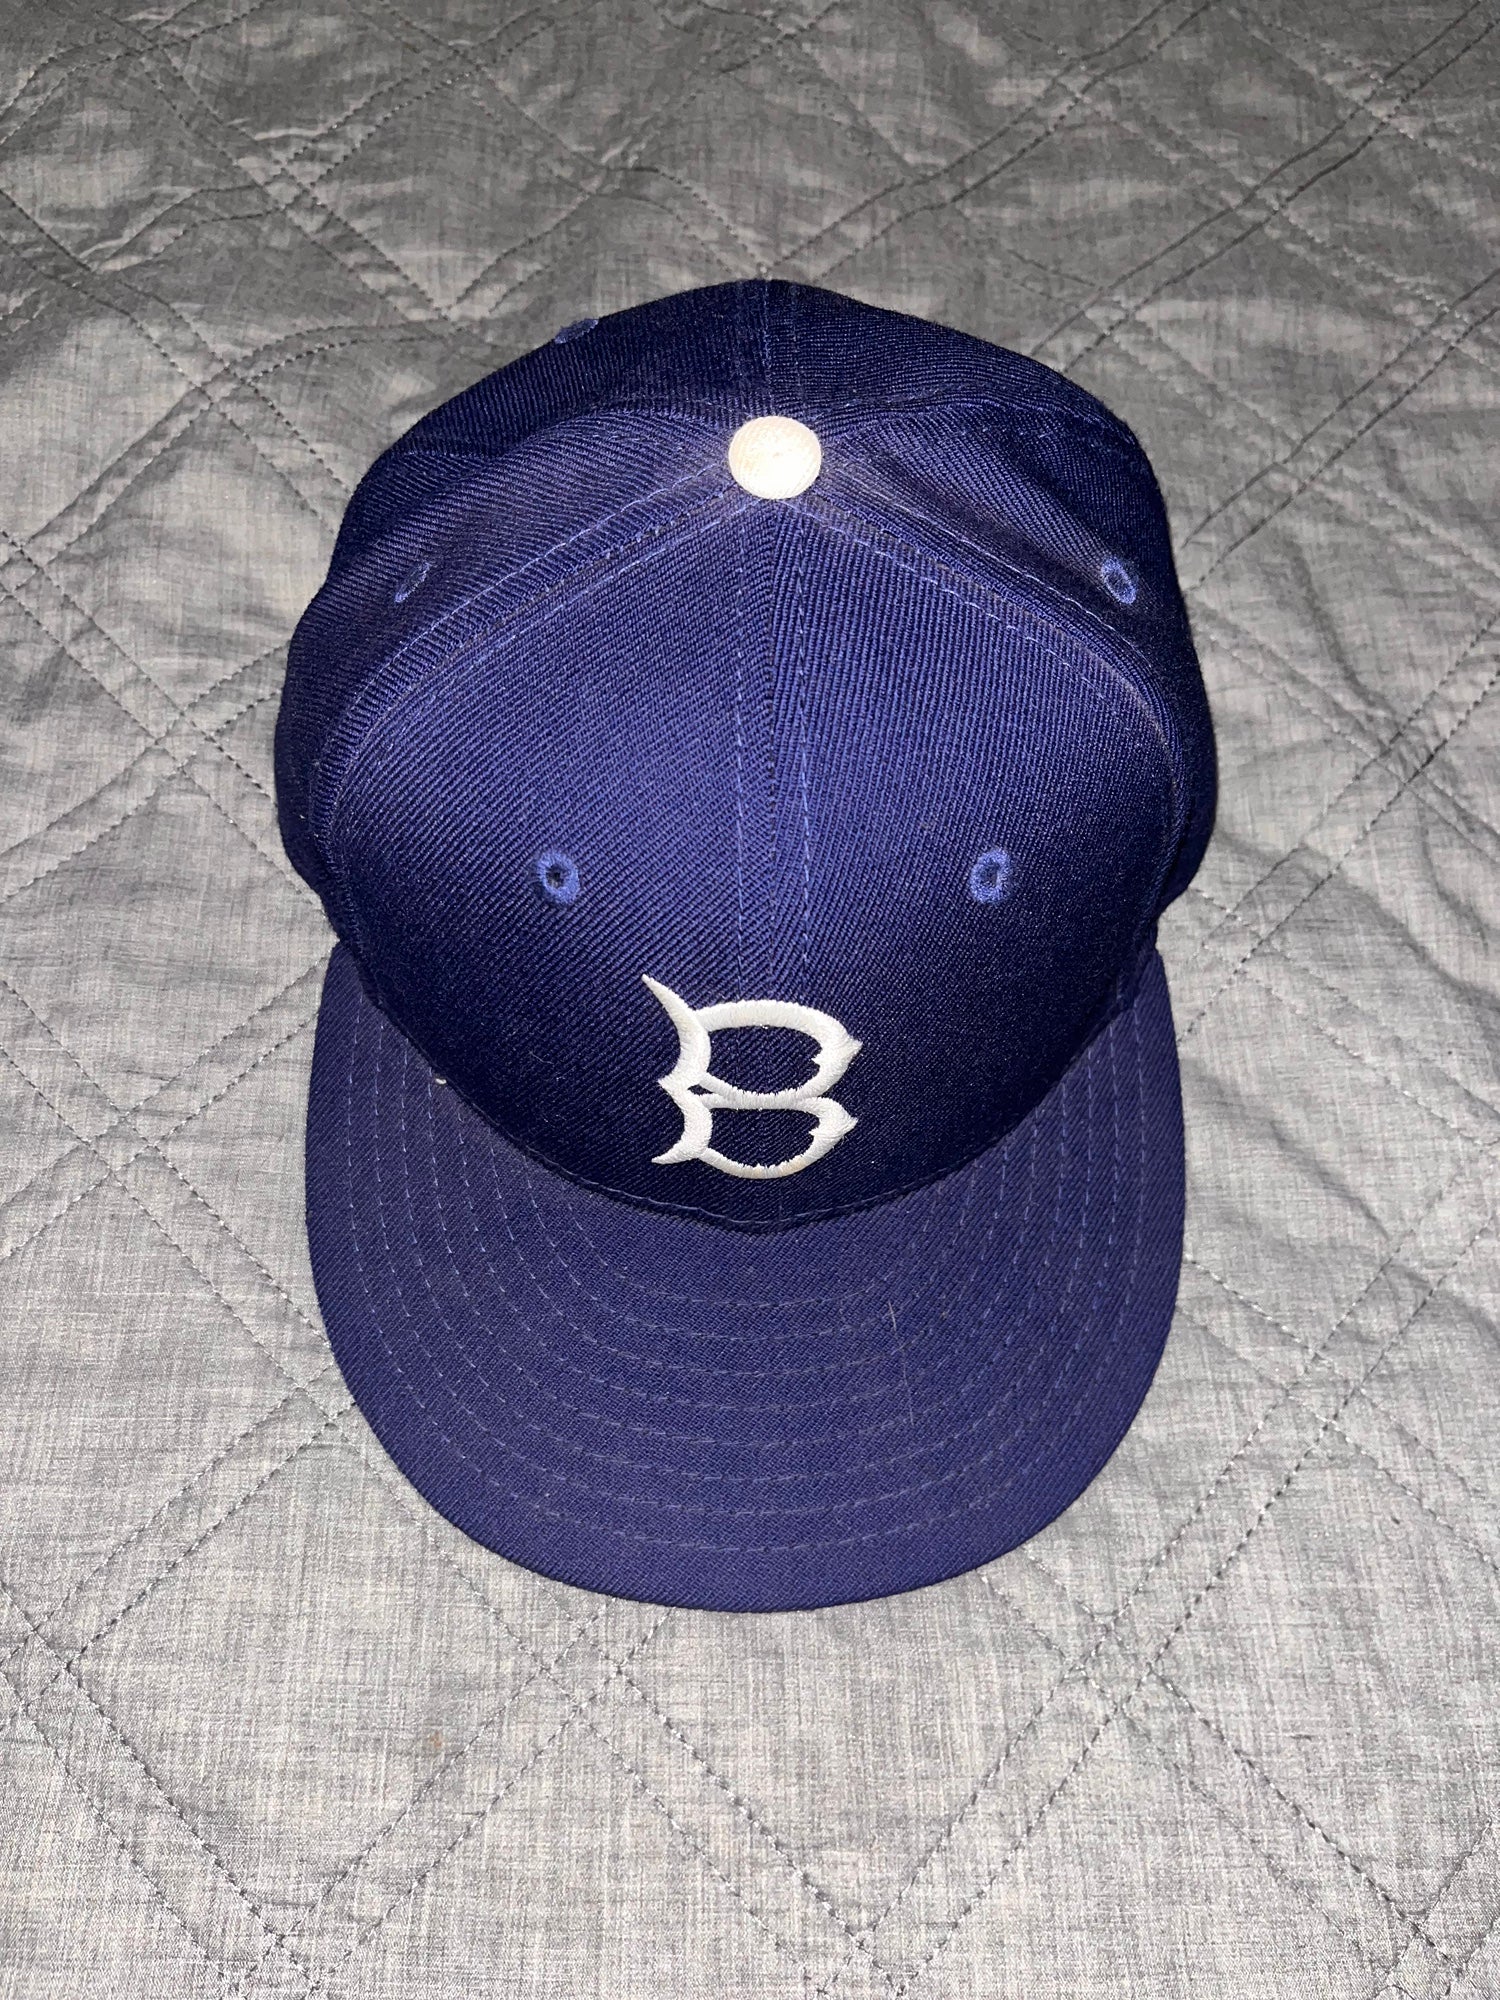 Vintage Starter MLB Brooklyn Dodgers Blue Jersey Men's Size Large